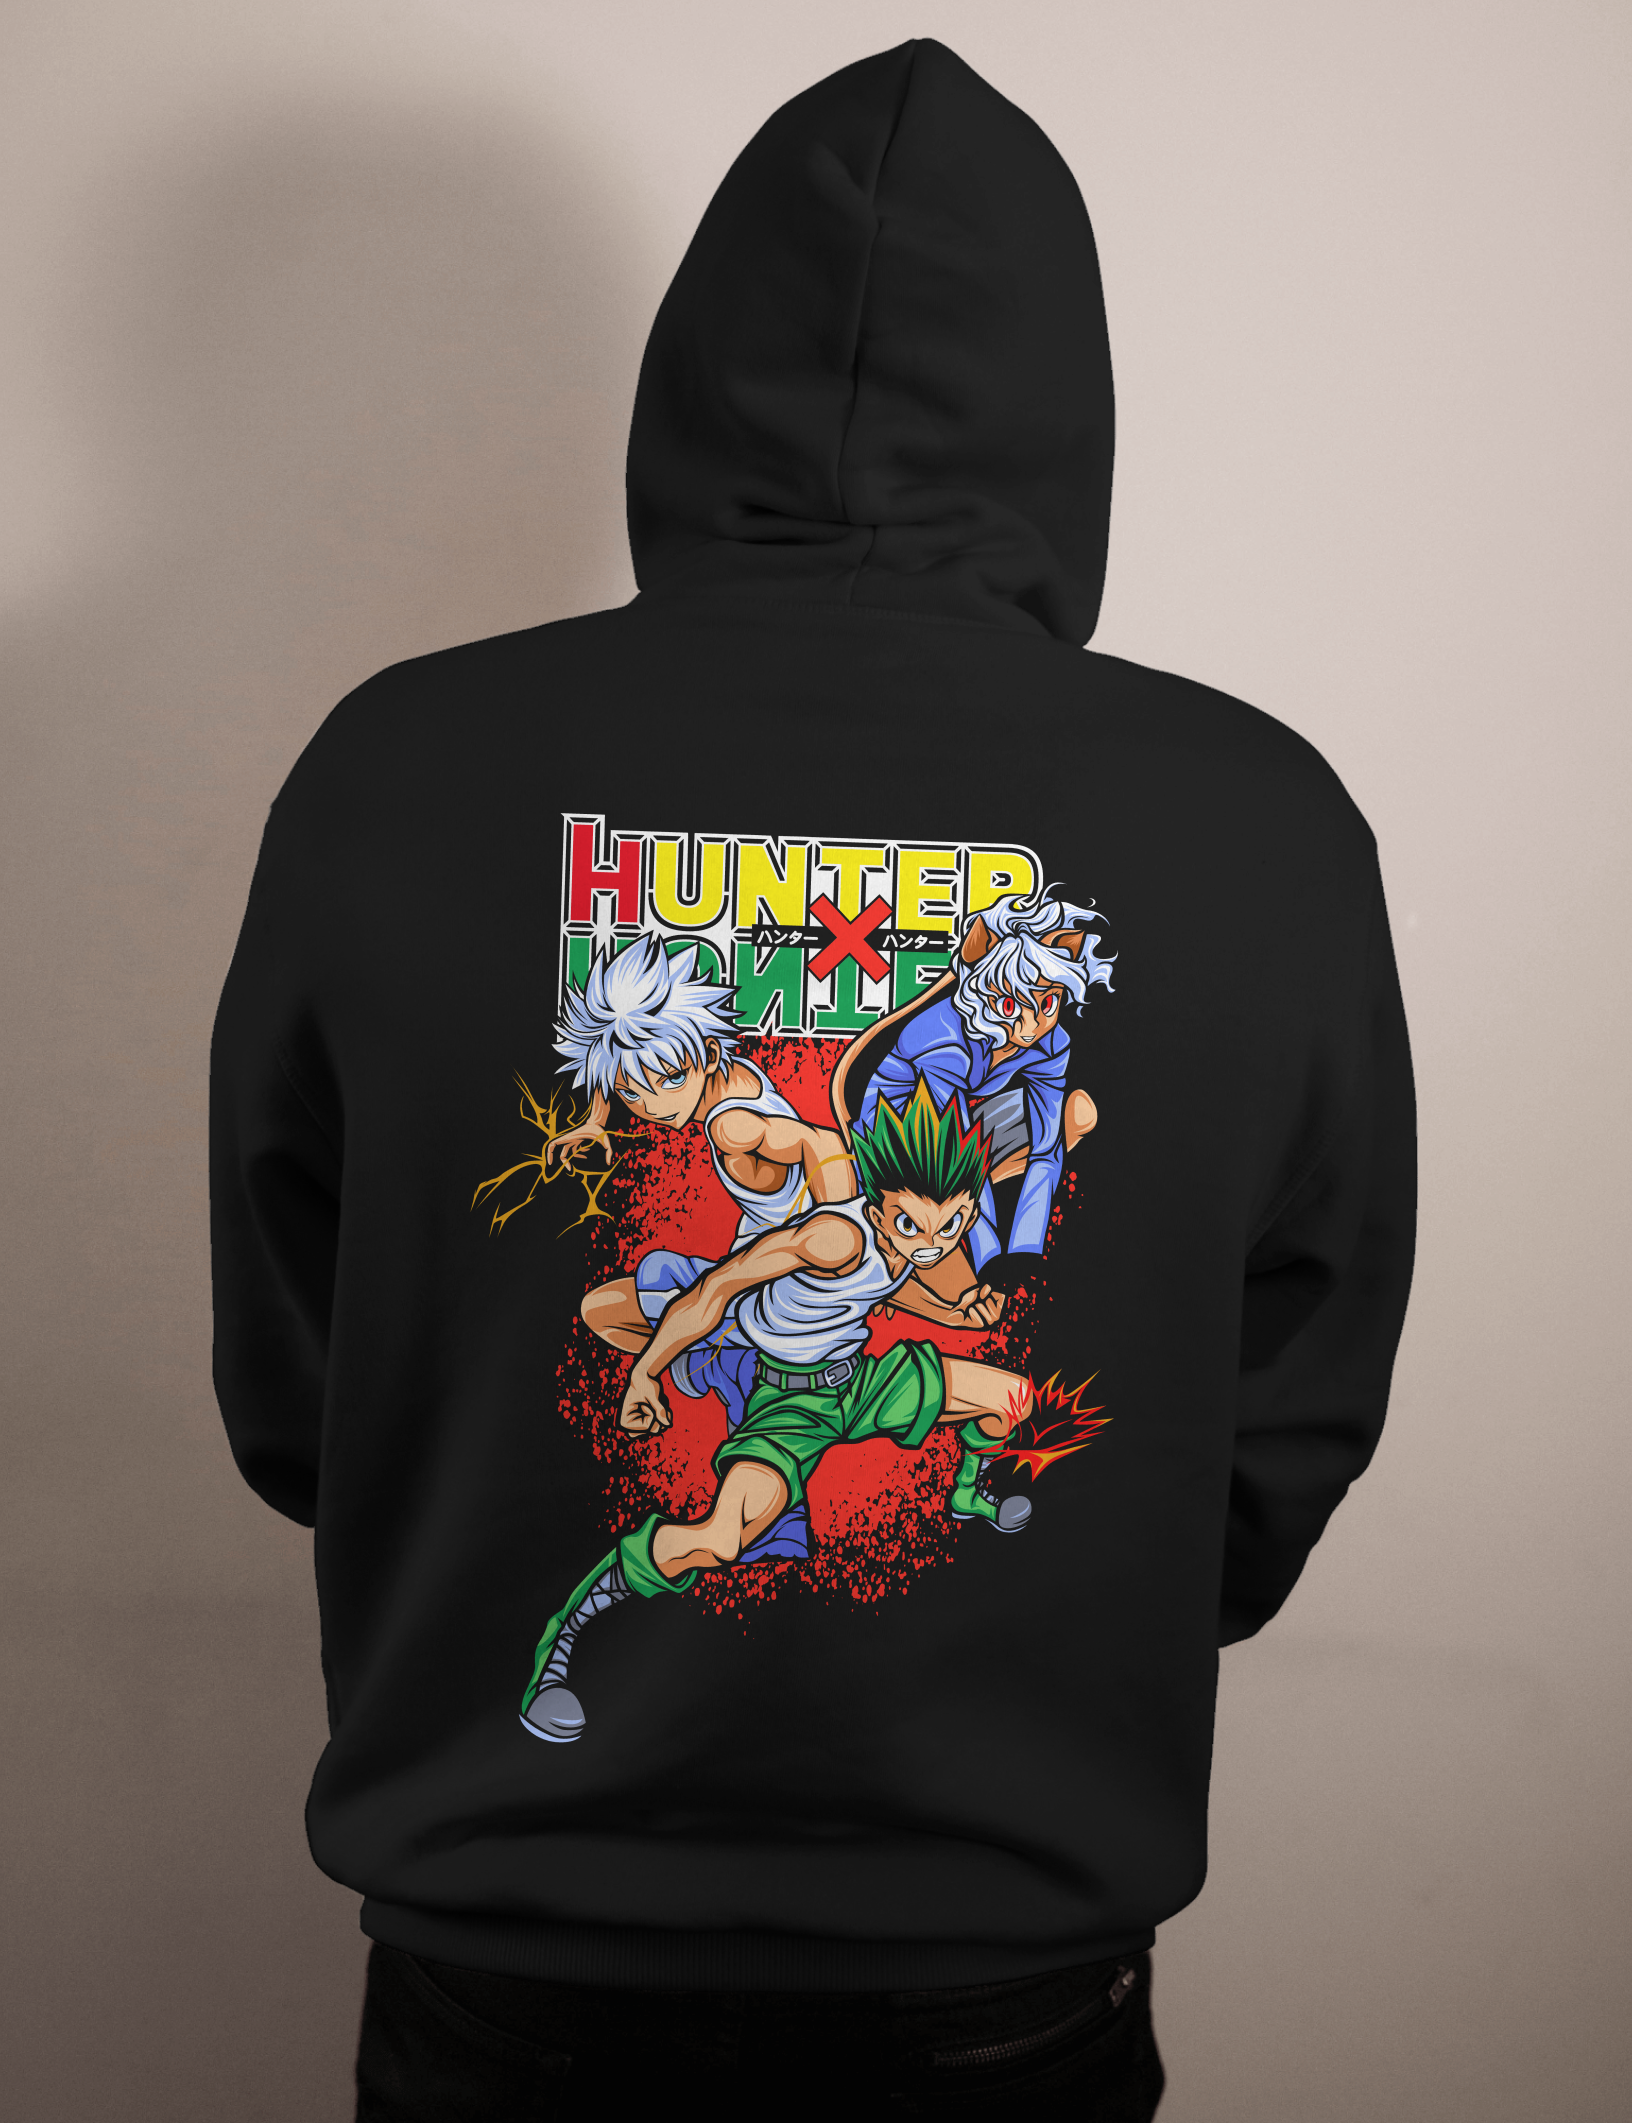 shop and buy hunter x hunter anime clothing gon and killua hoodie